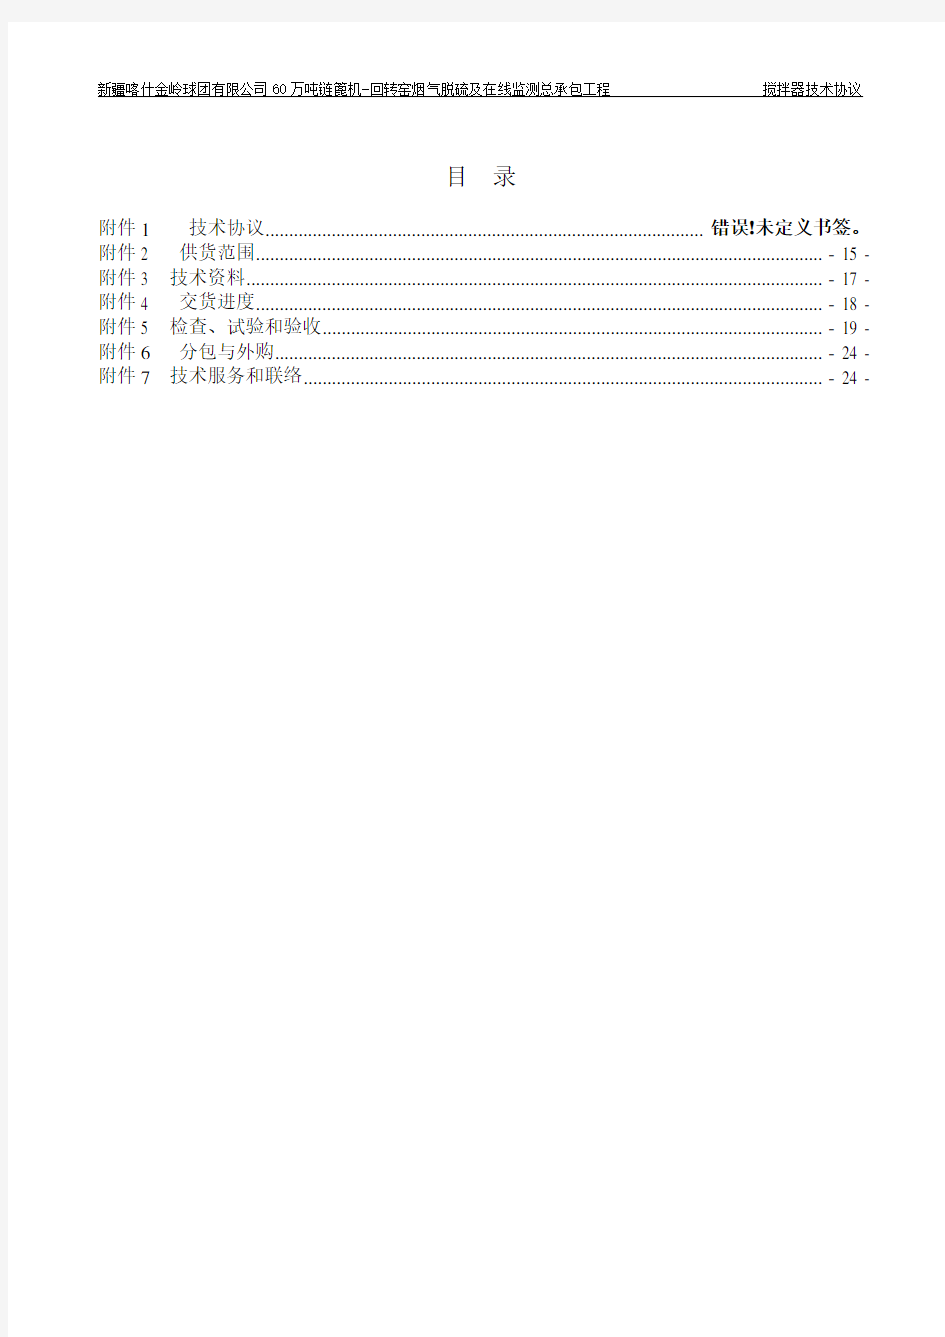 B004 搅拌器技术规范书20151119